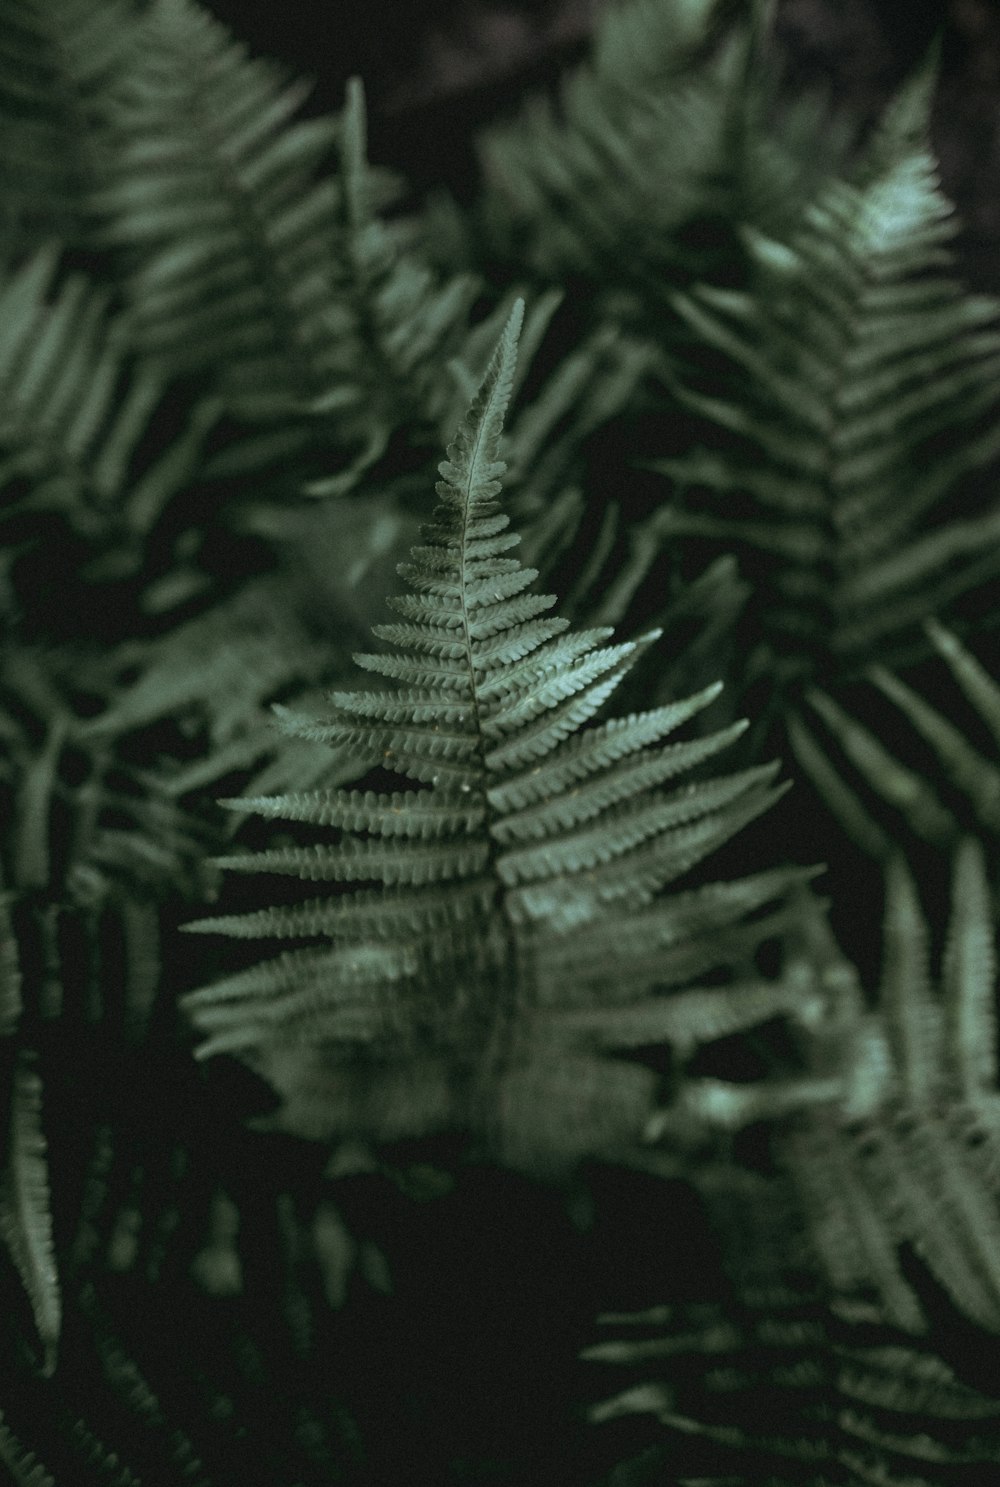 녹색 잎이 있는 식물의 근접 촬영 사진